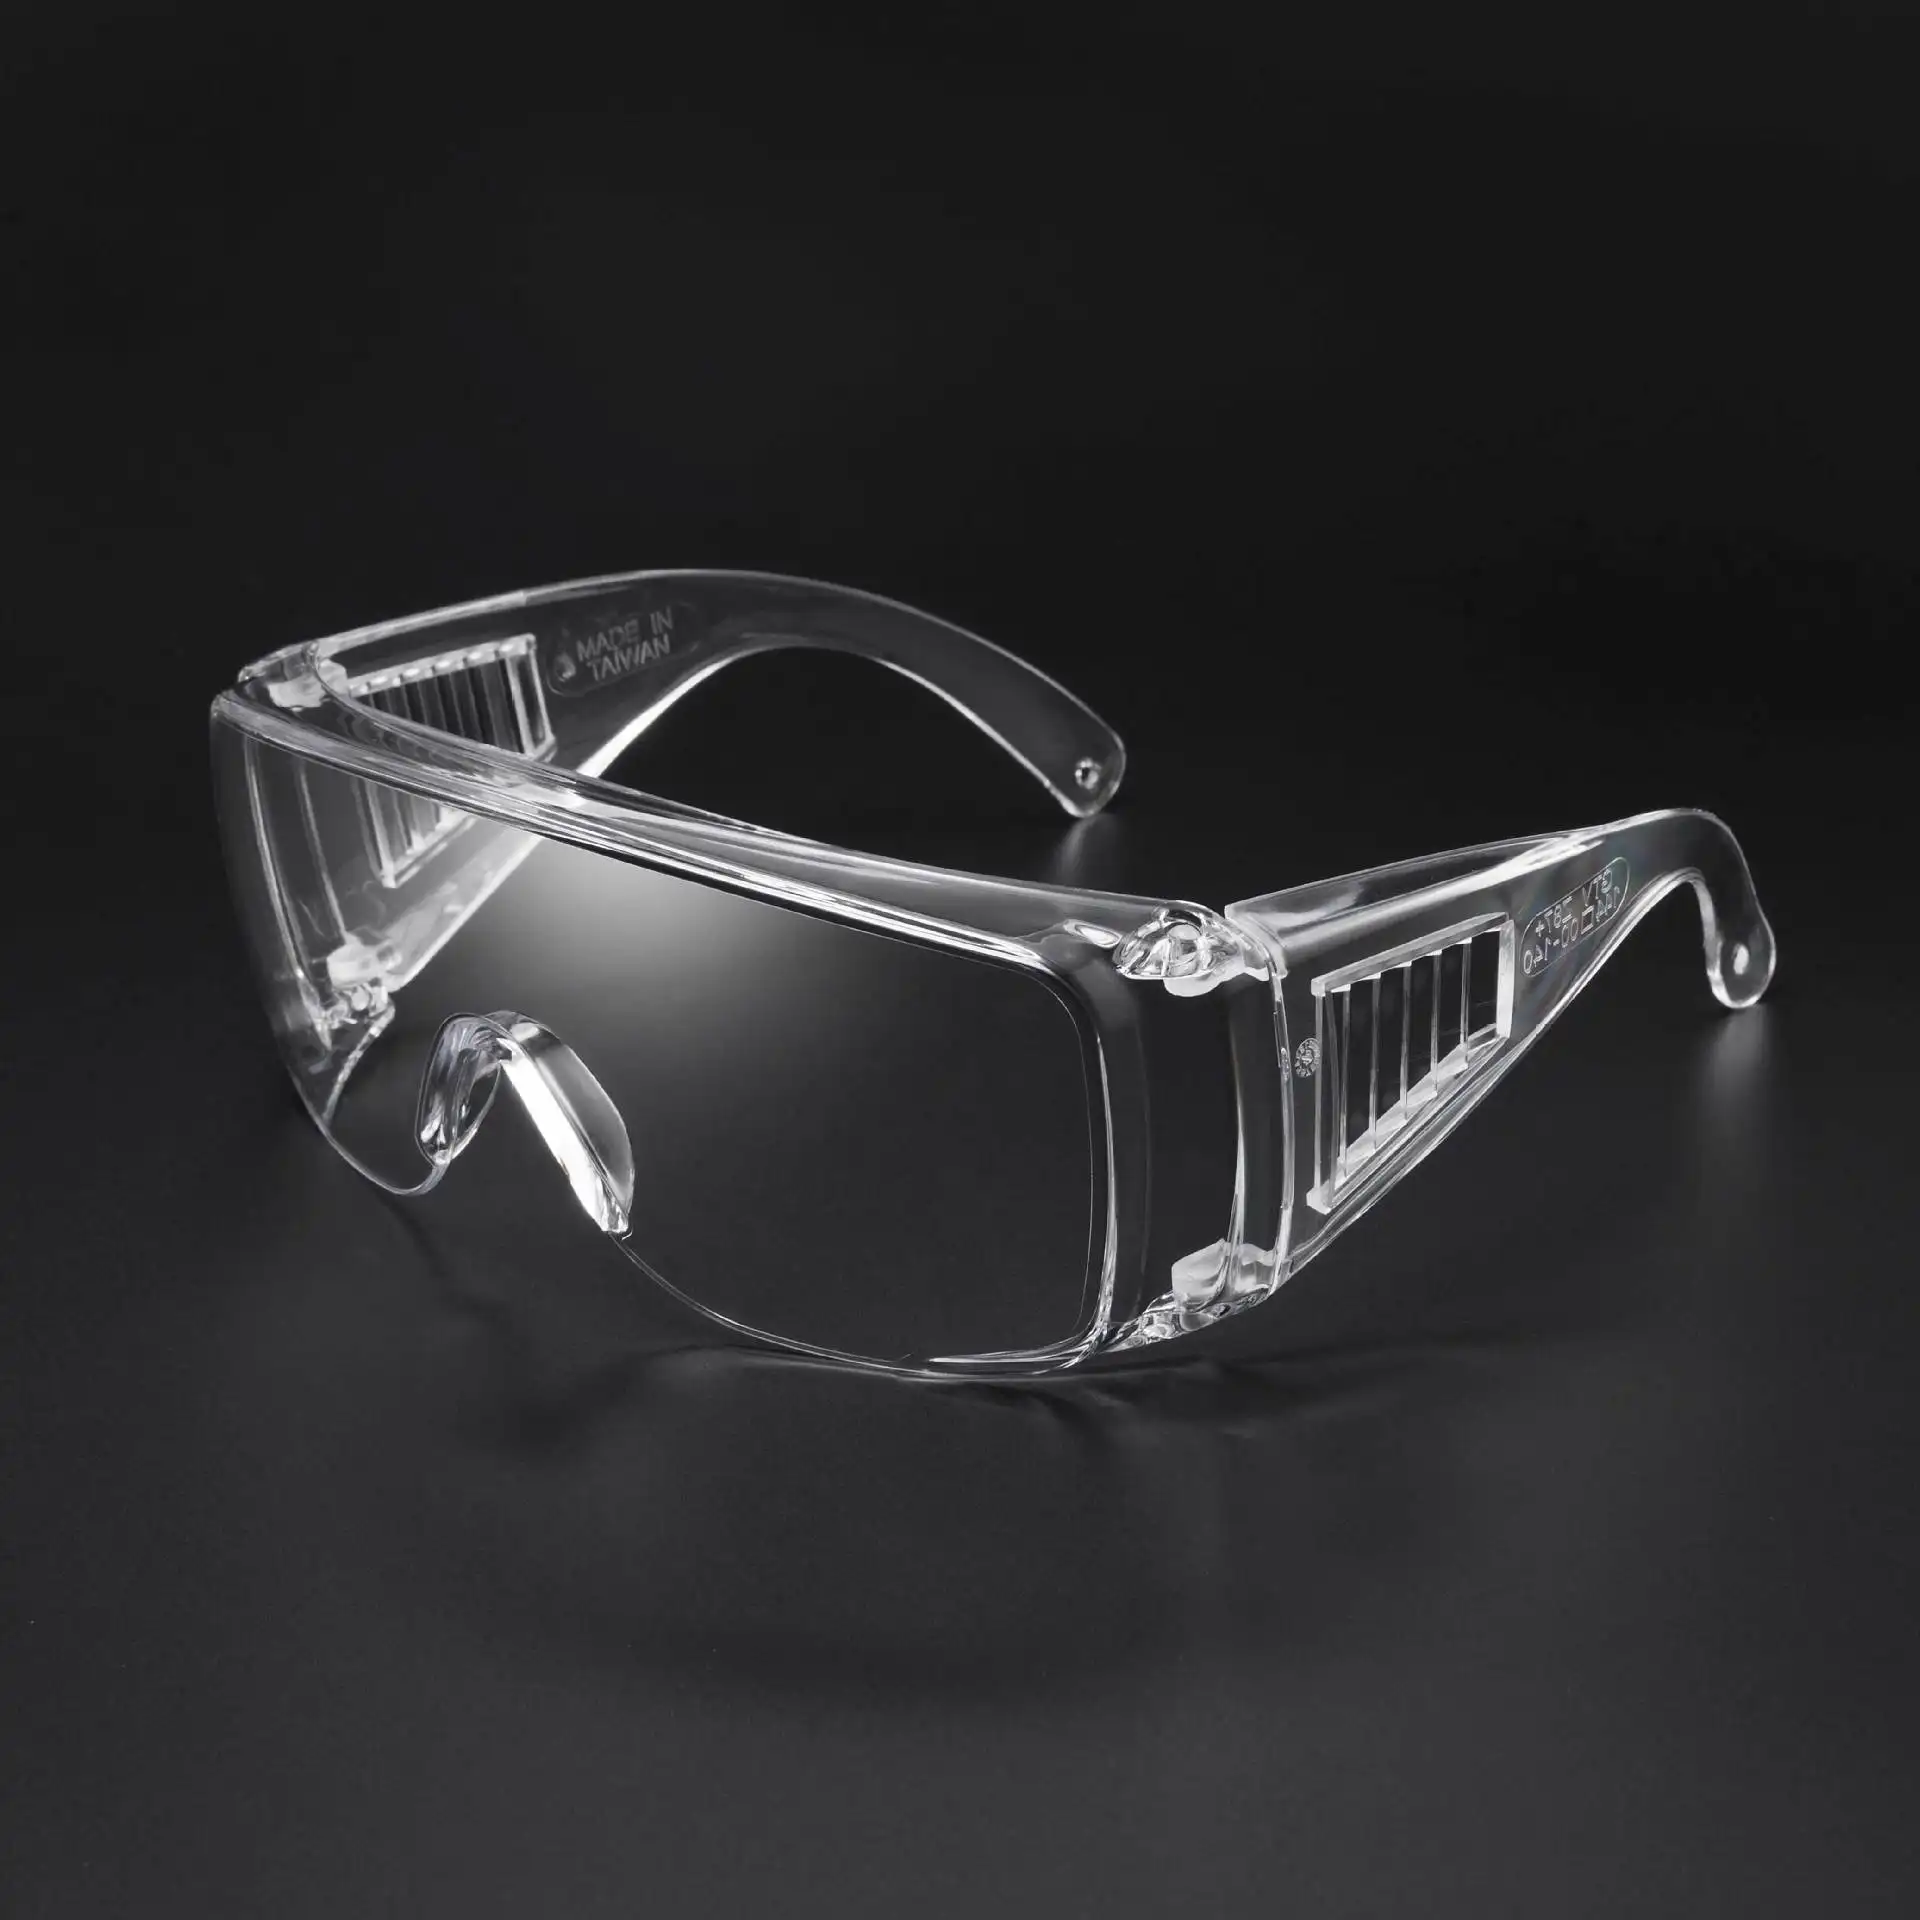 Gafas DE SEGURIDAD Glazzy 2024, gafas de protección ocular, lentes antivaho, gafas de seguridad láser de 3m, gafas de seguridad para construcción ANSI Z87.1